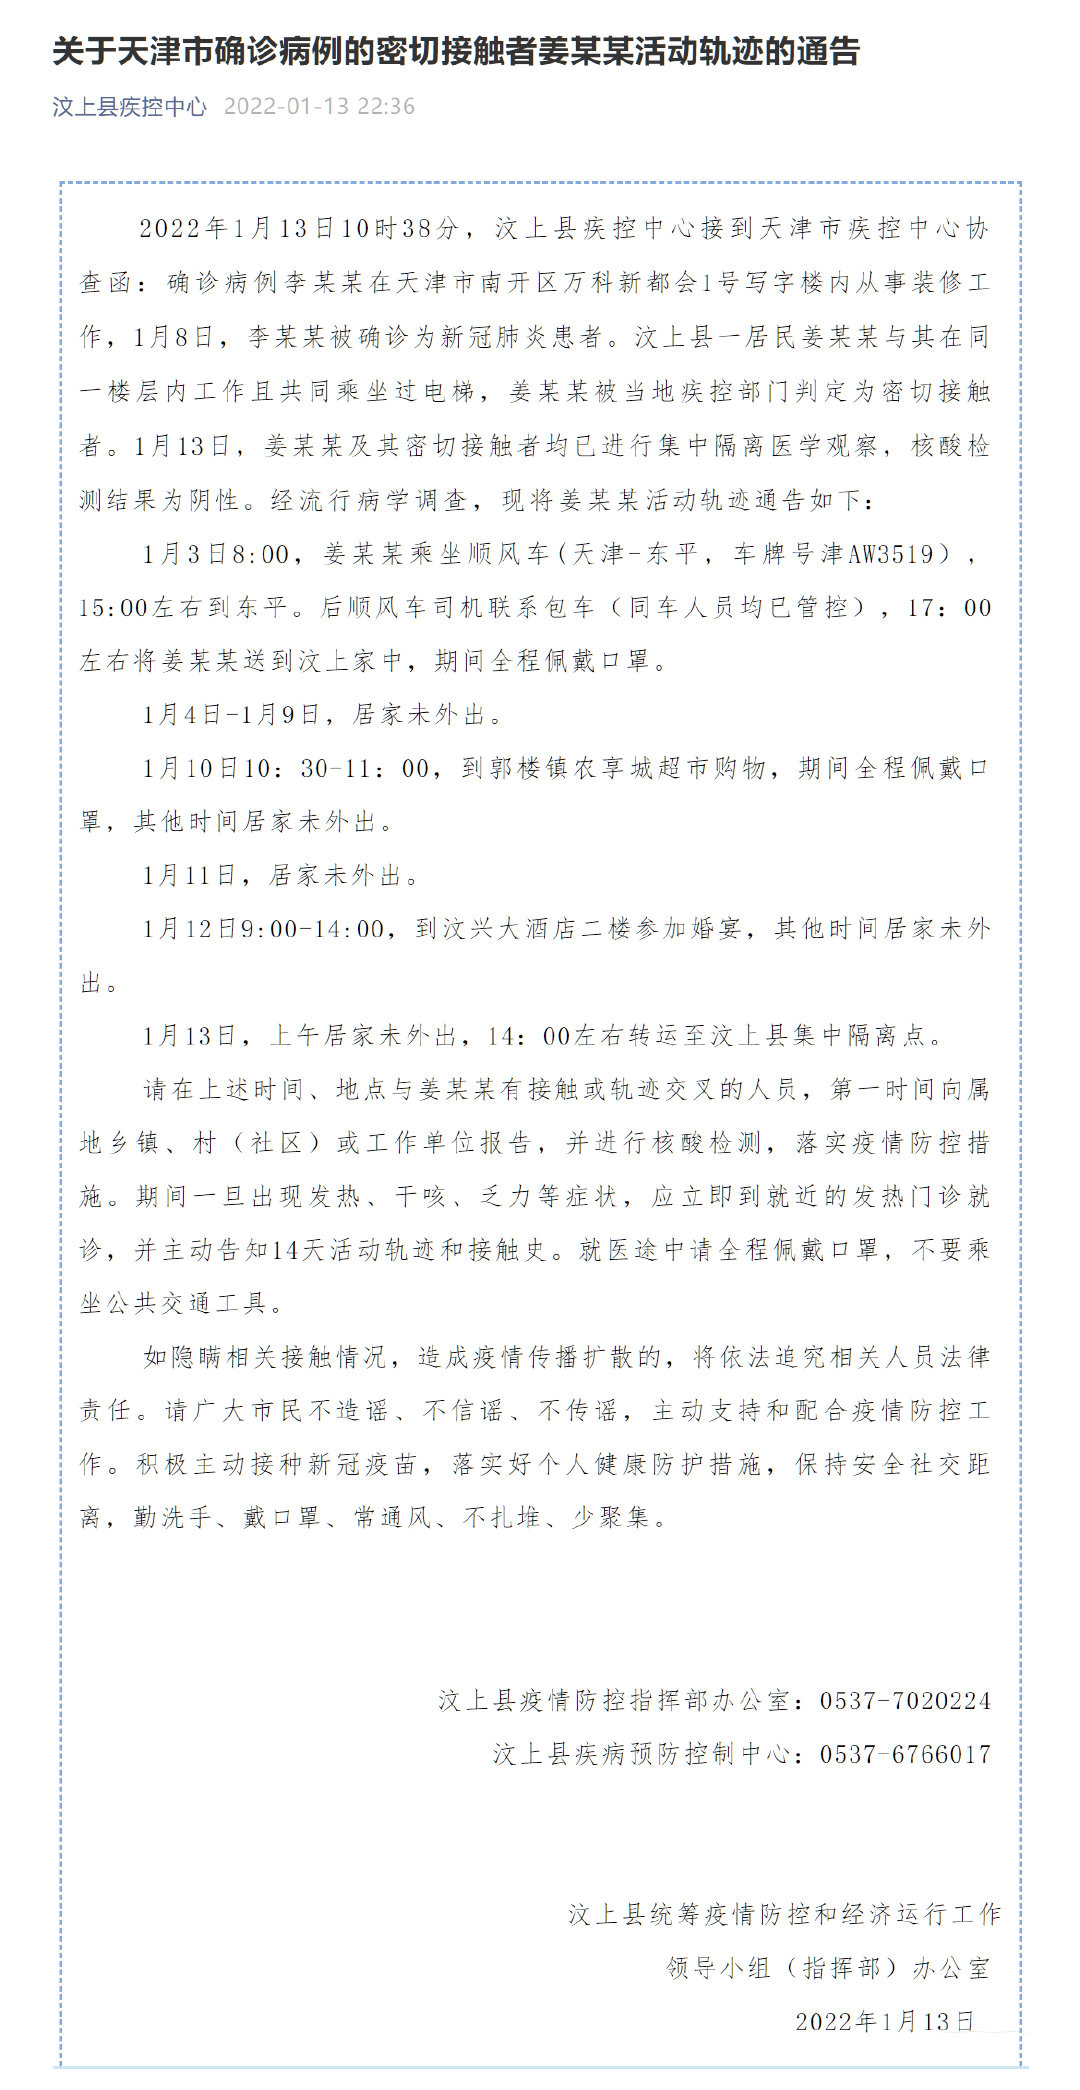 山东济宁通报一天津确诊病例的密接者轨迹 曾参加婚宴